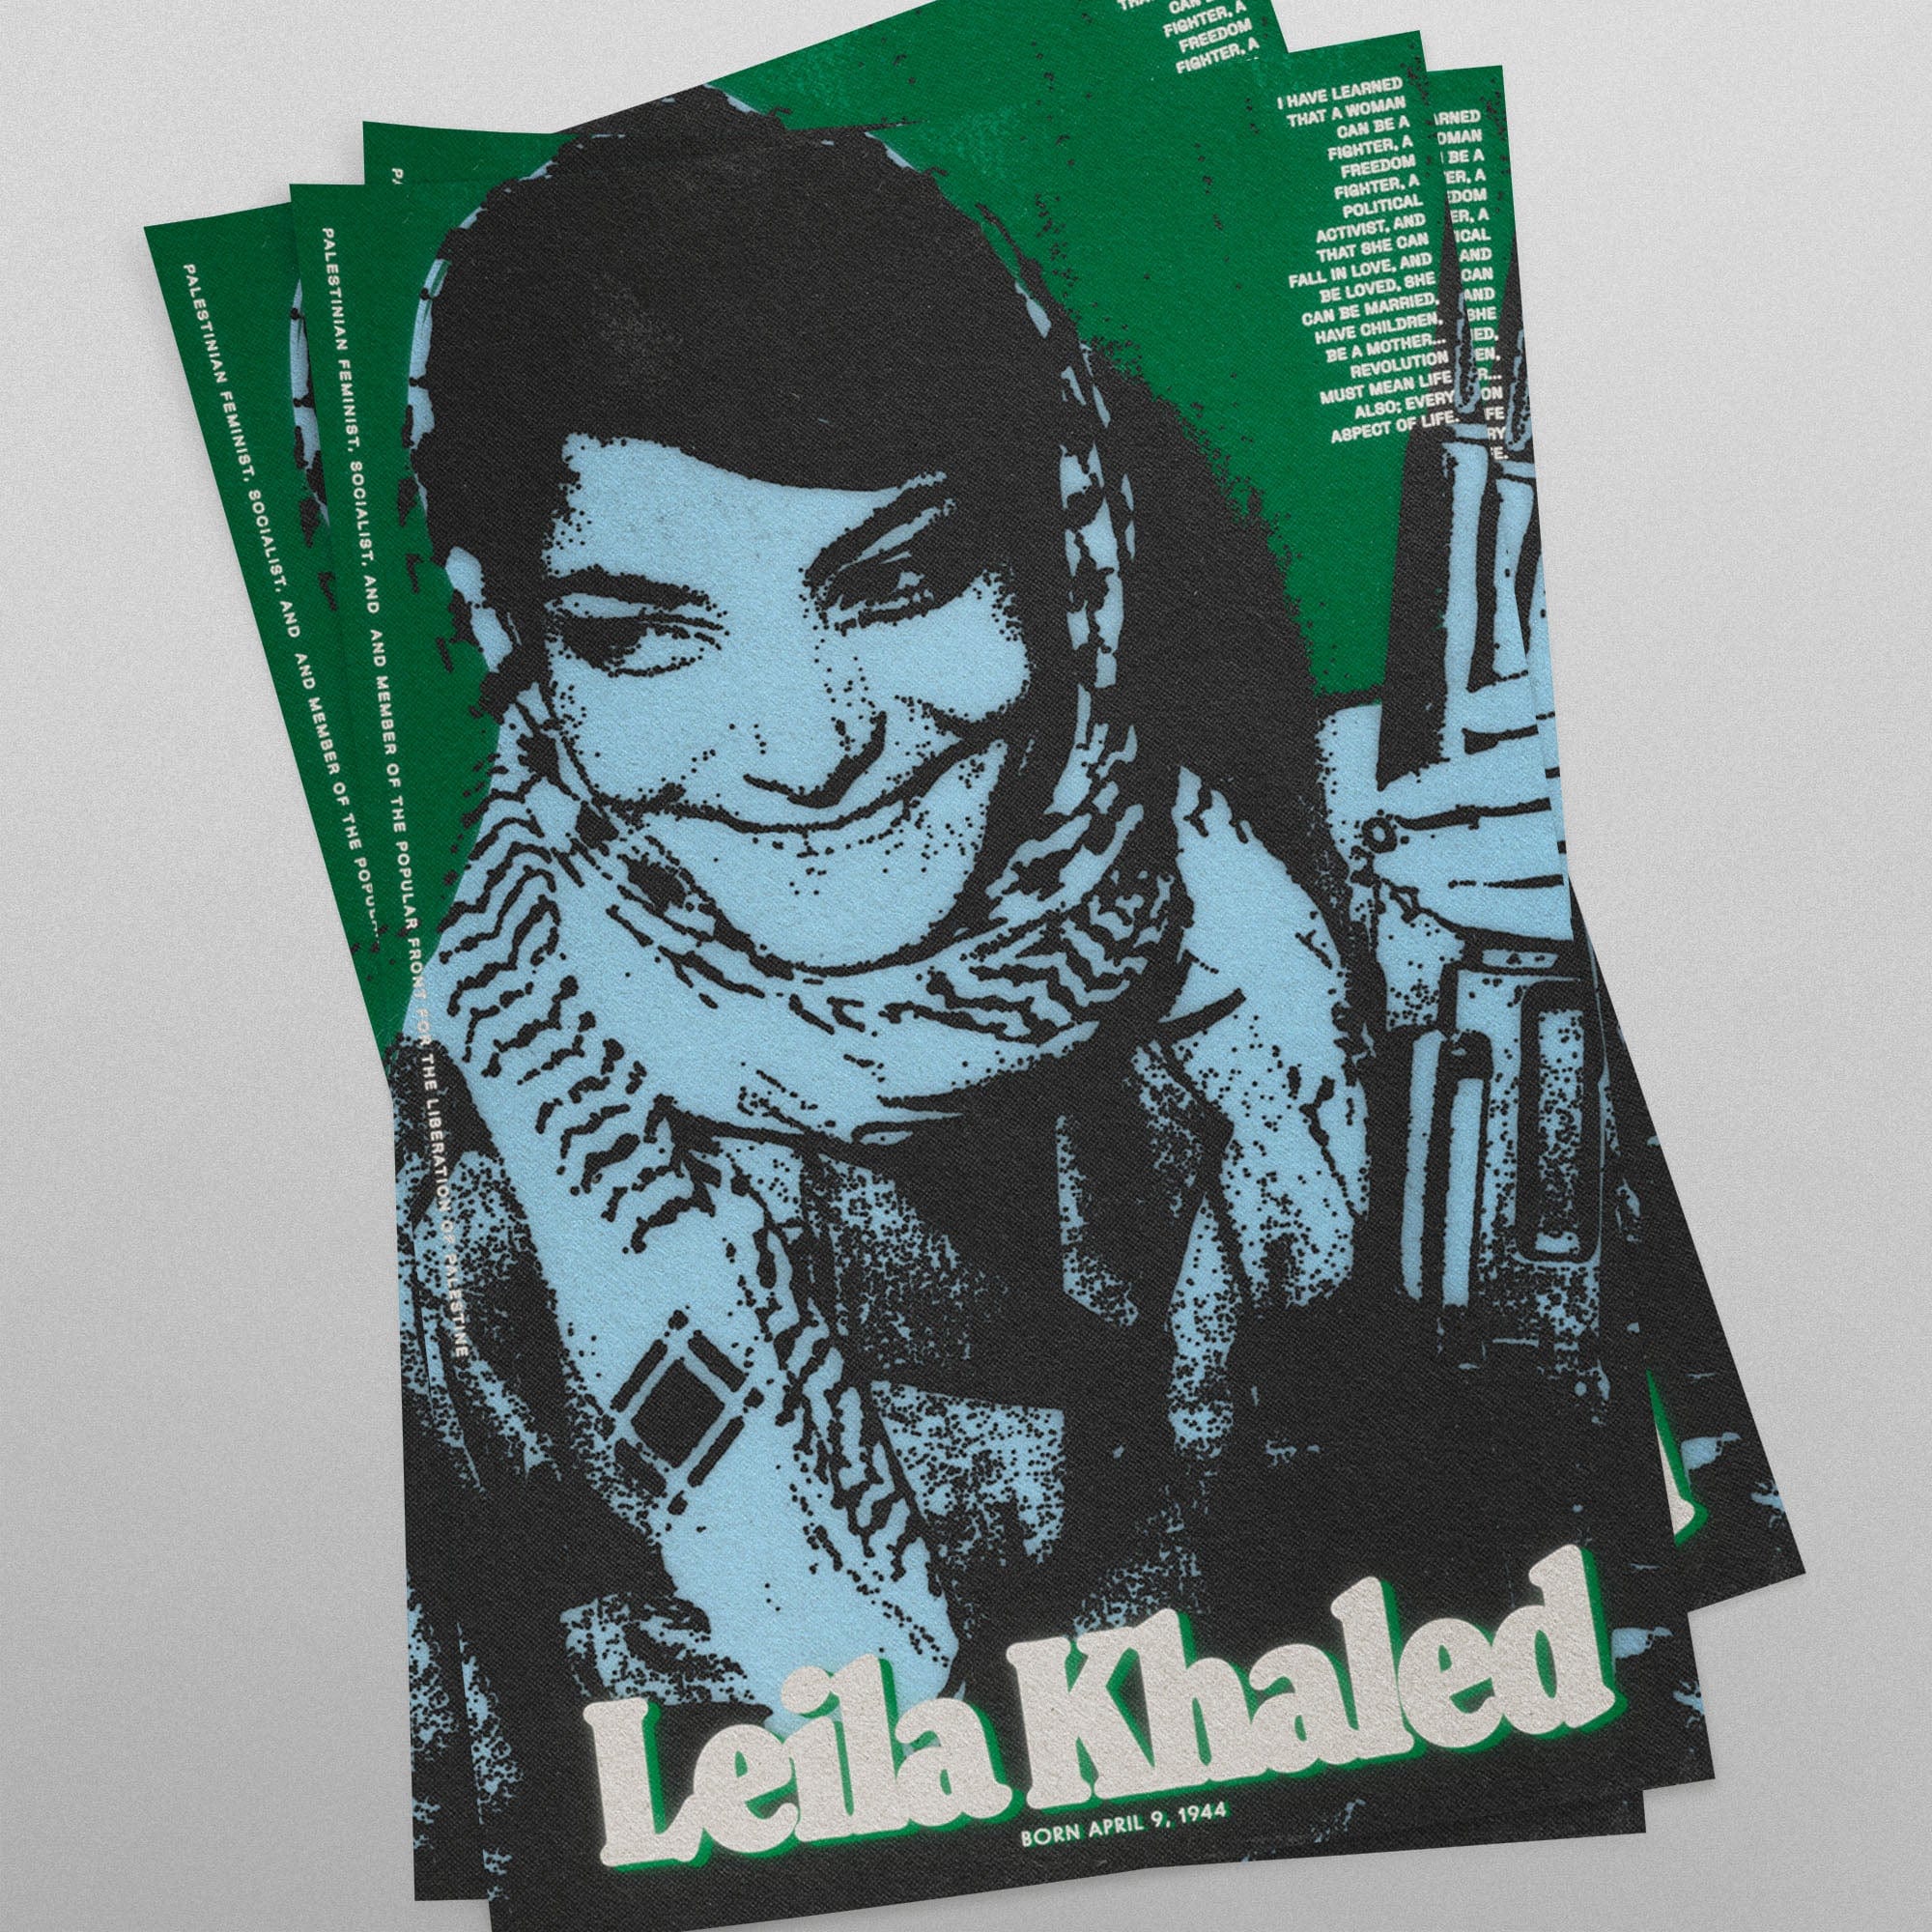 Leila Khaled (11 x 17 Poster print)